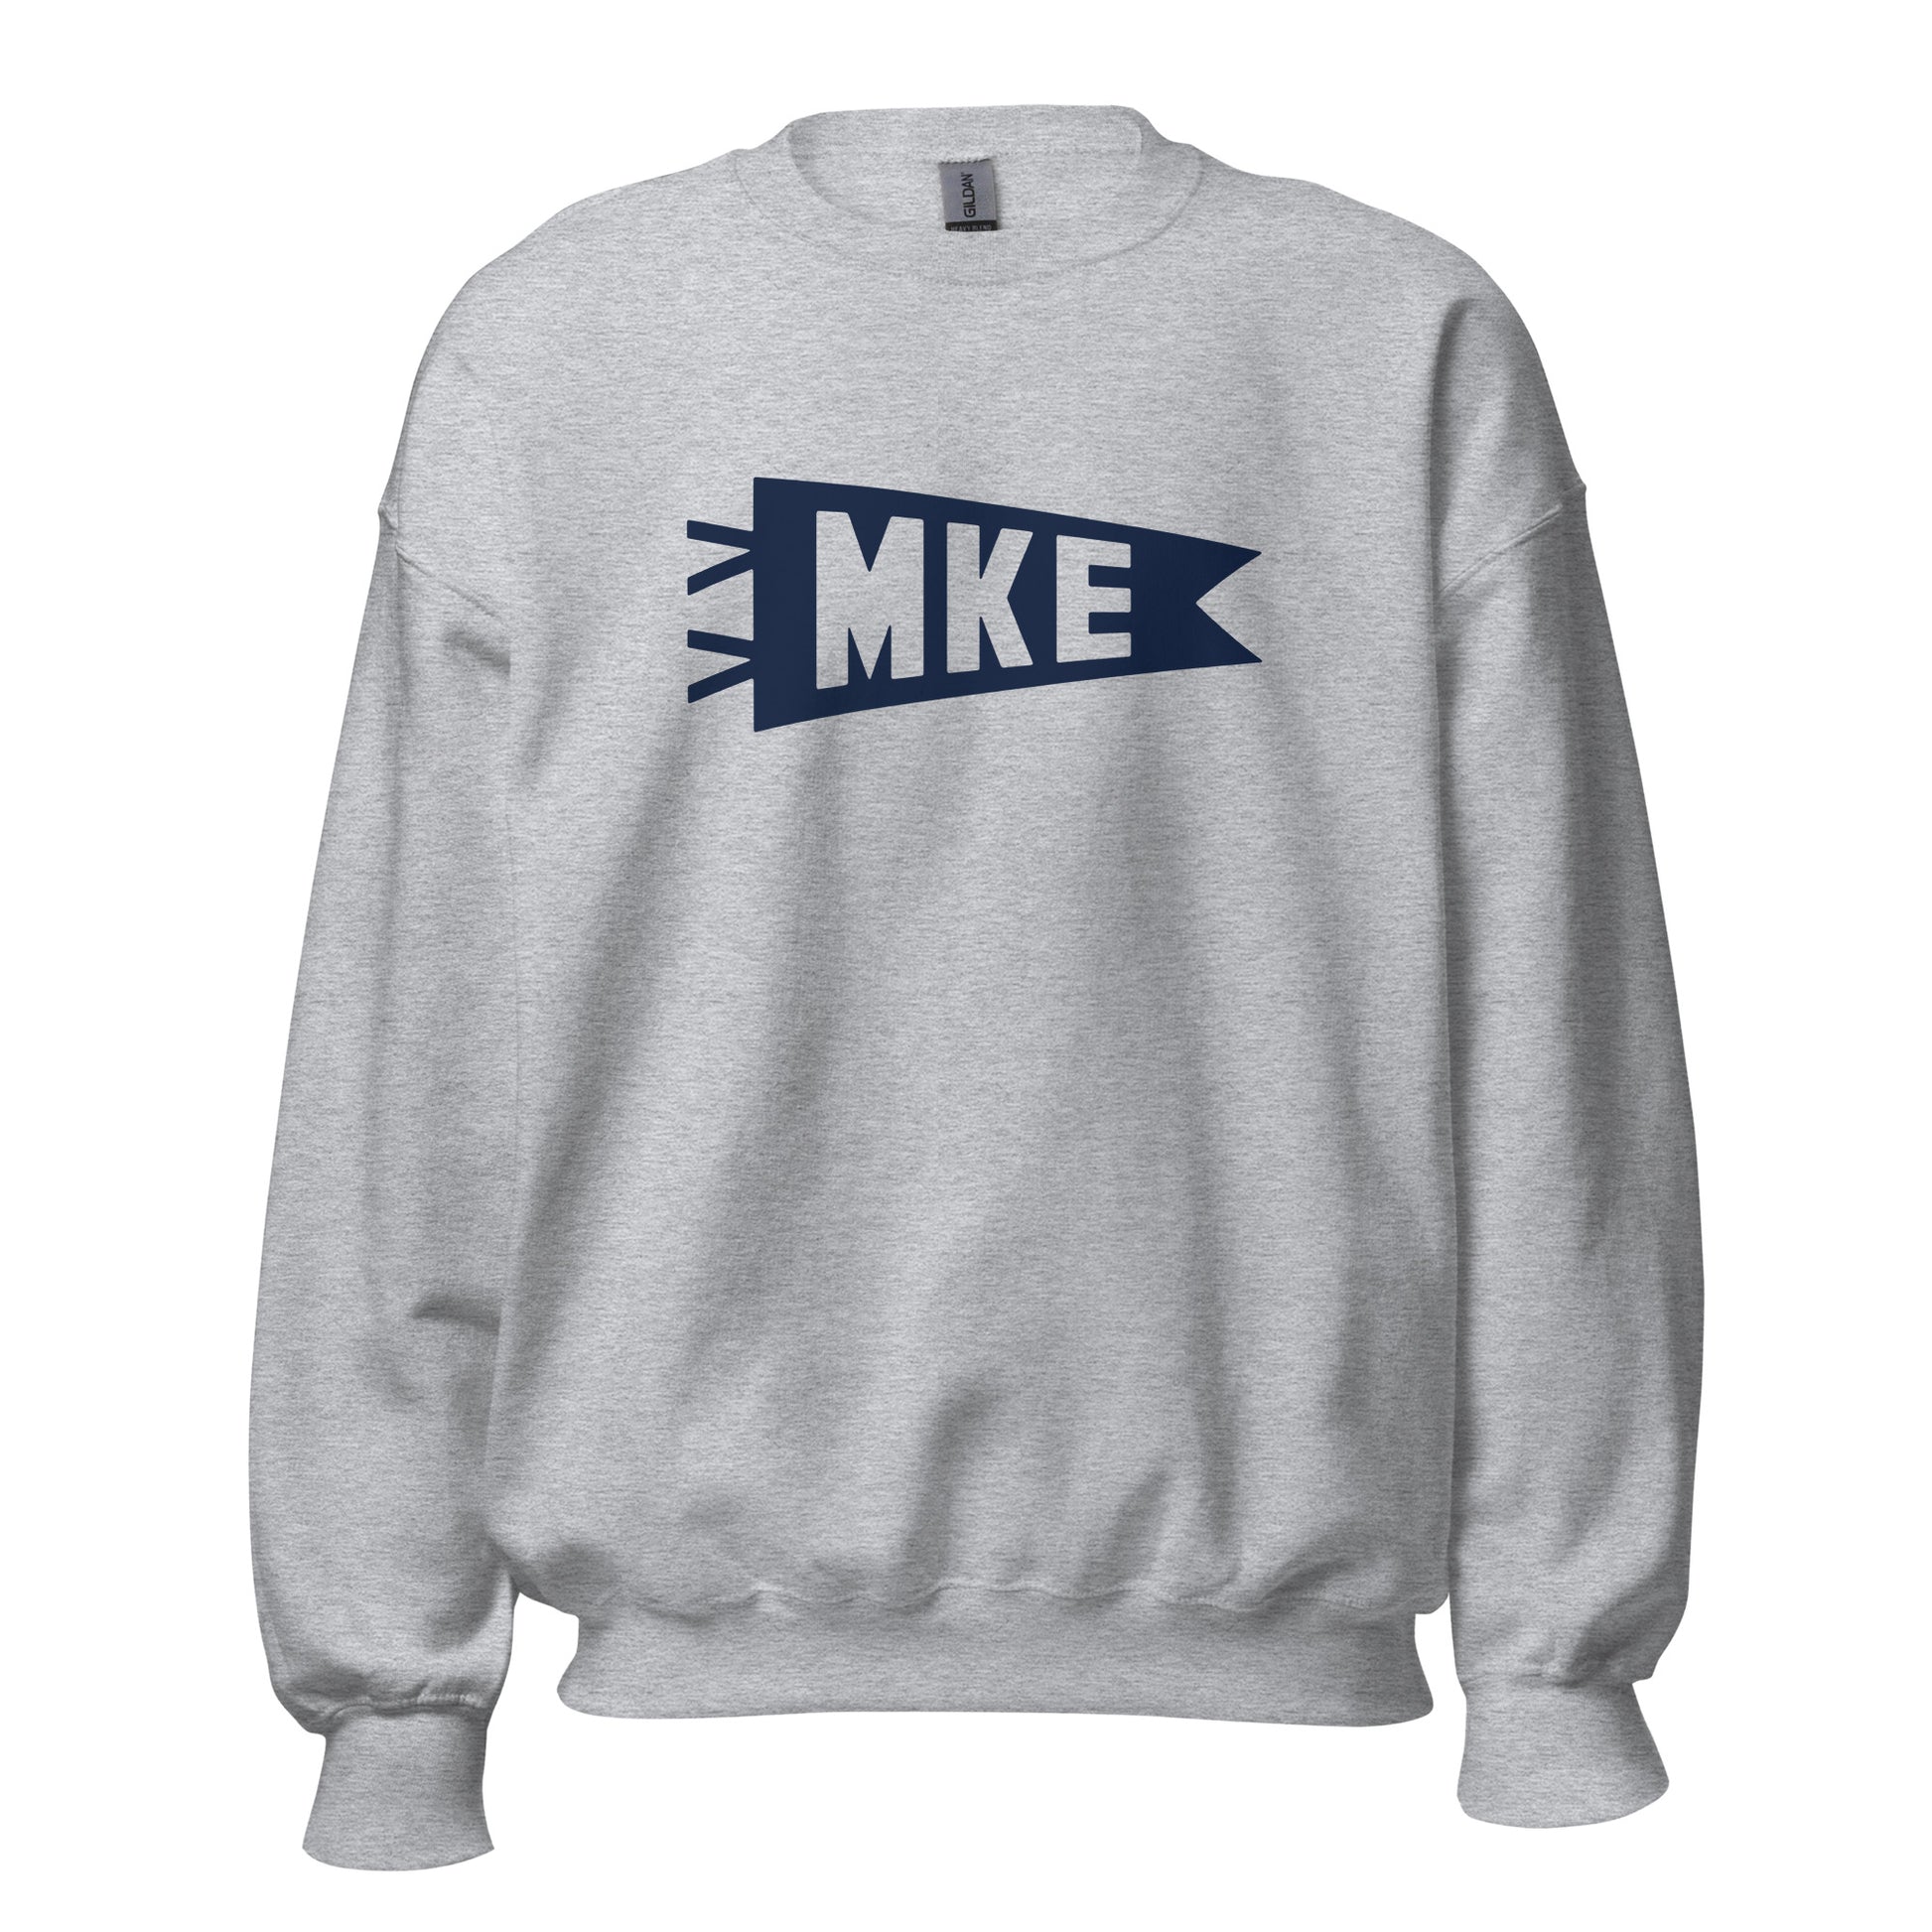 Airport Code Sweatshirt - Navy Blue Graphic • MKE Milwaukee • YHM Designs - Image 08